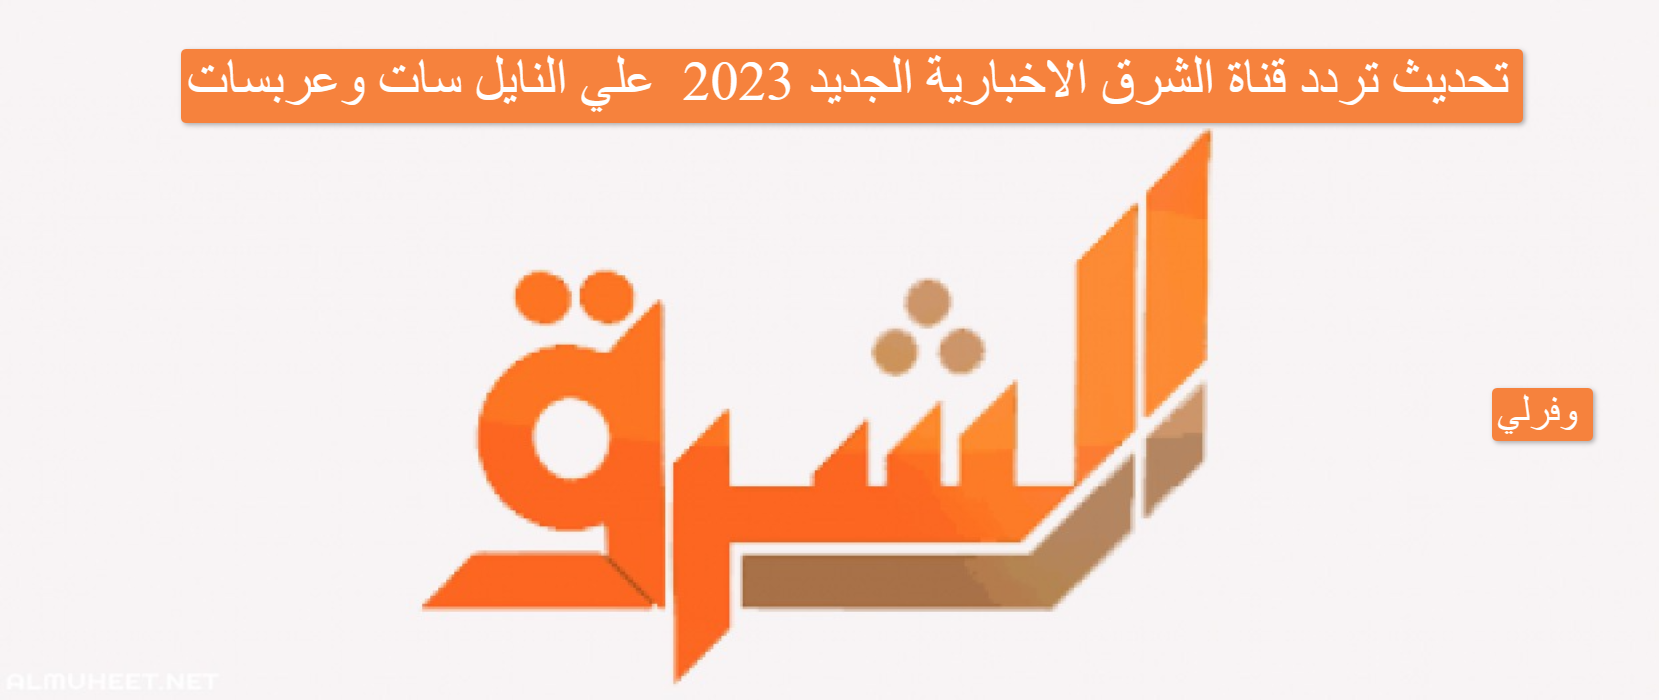 تحديث تردد قناة الشرق الاخبارية الجديد 2023 Elsharq HD SD علي النايل سات وعربسات